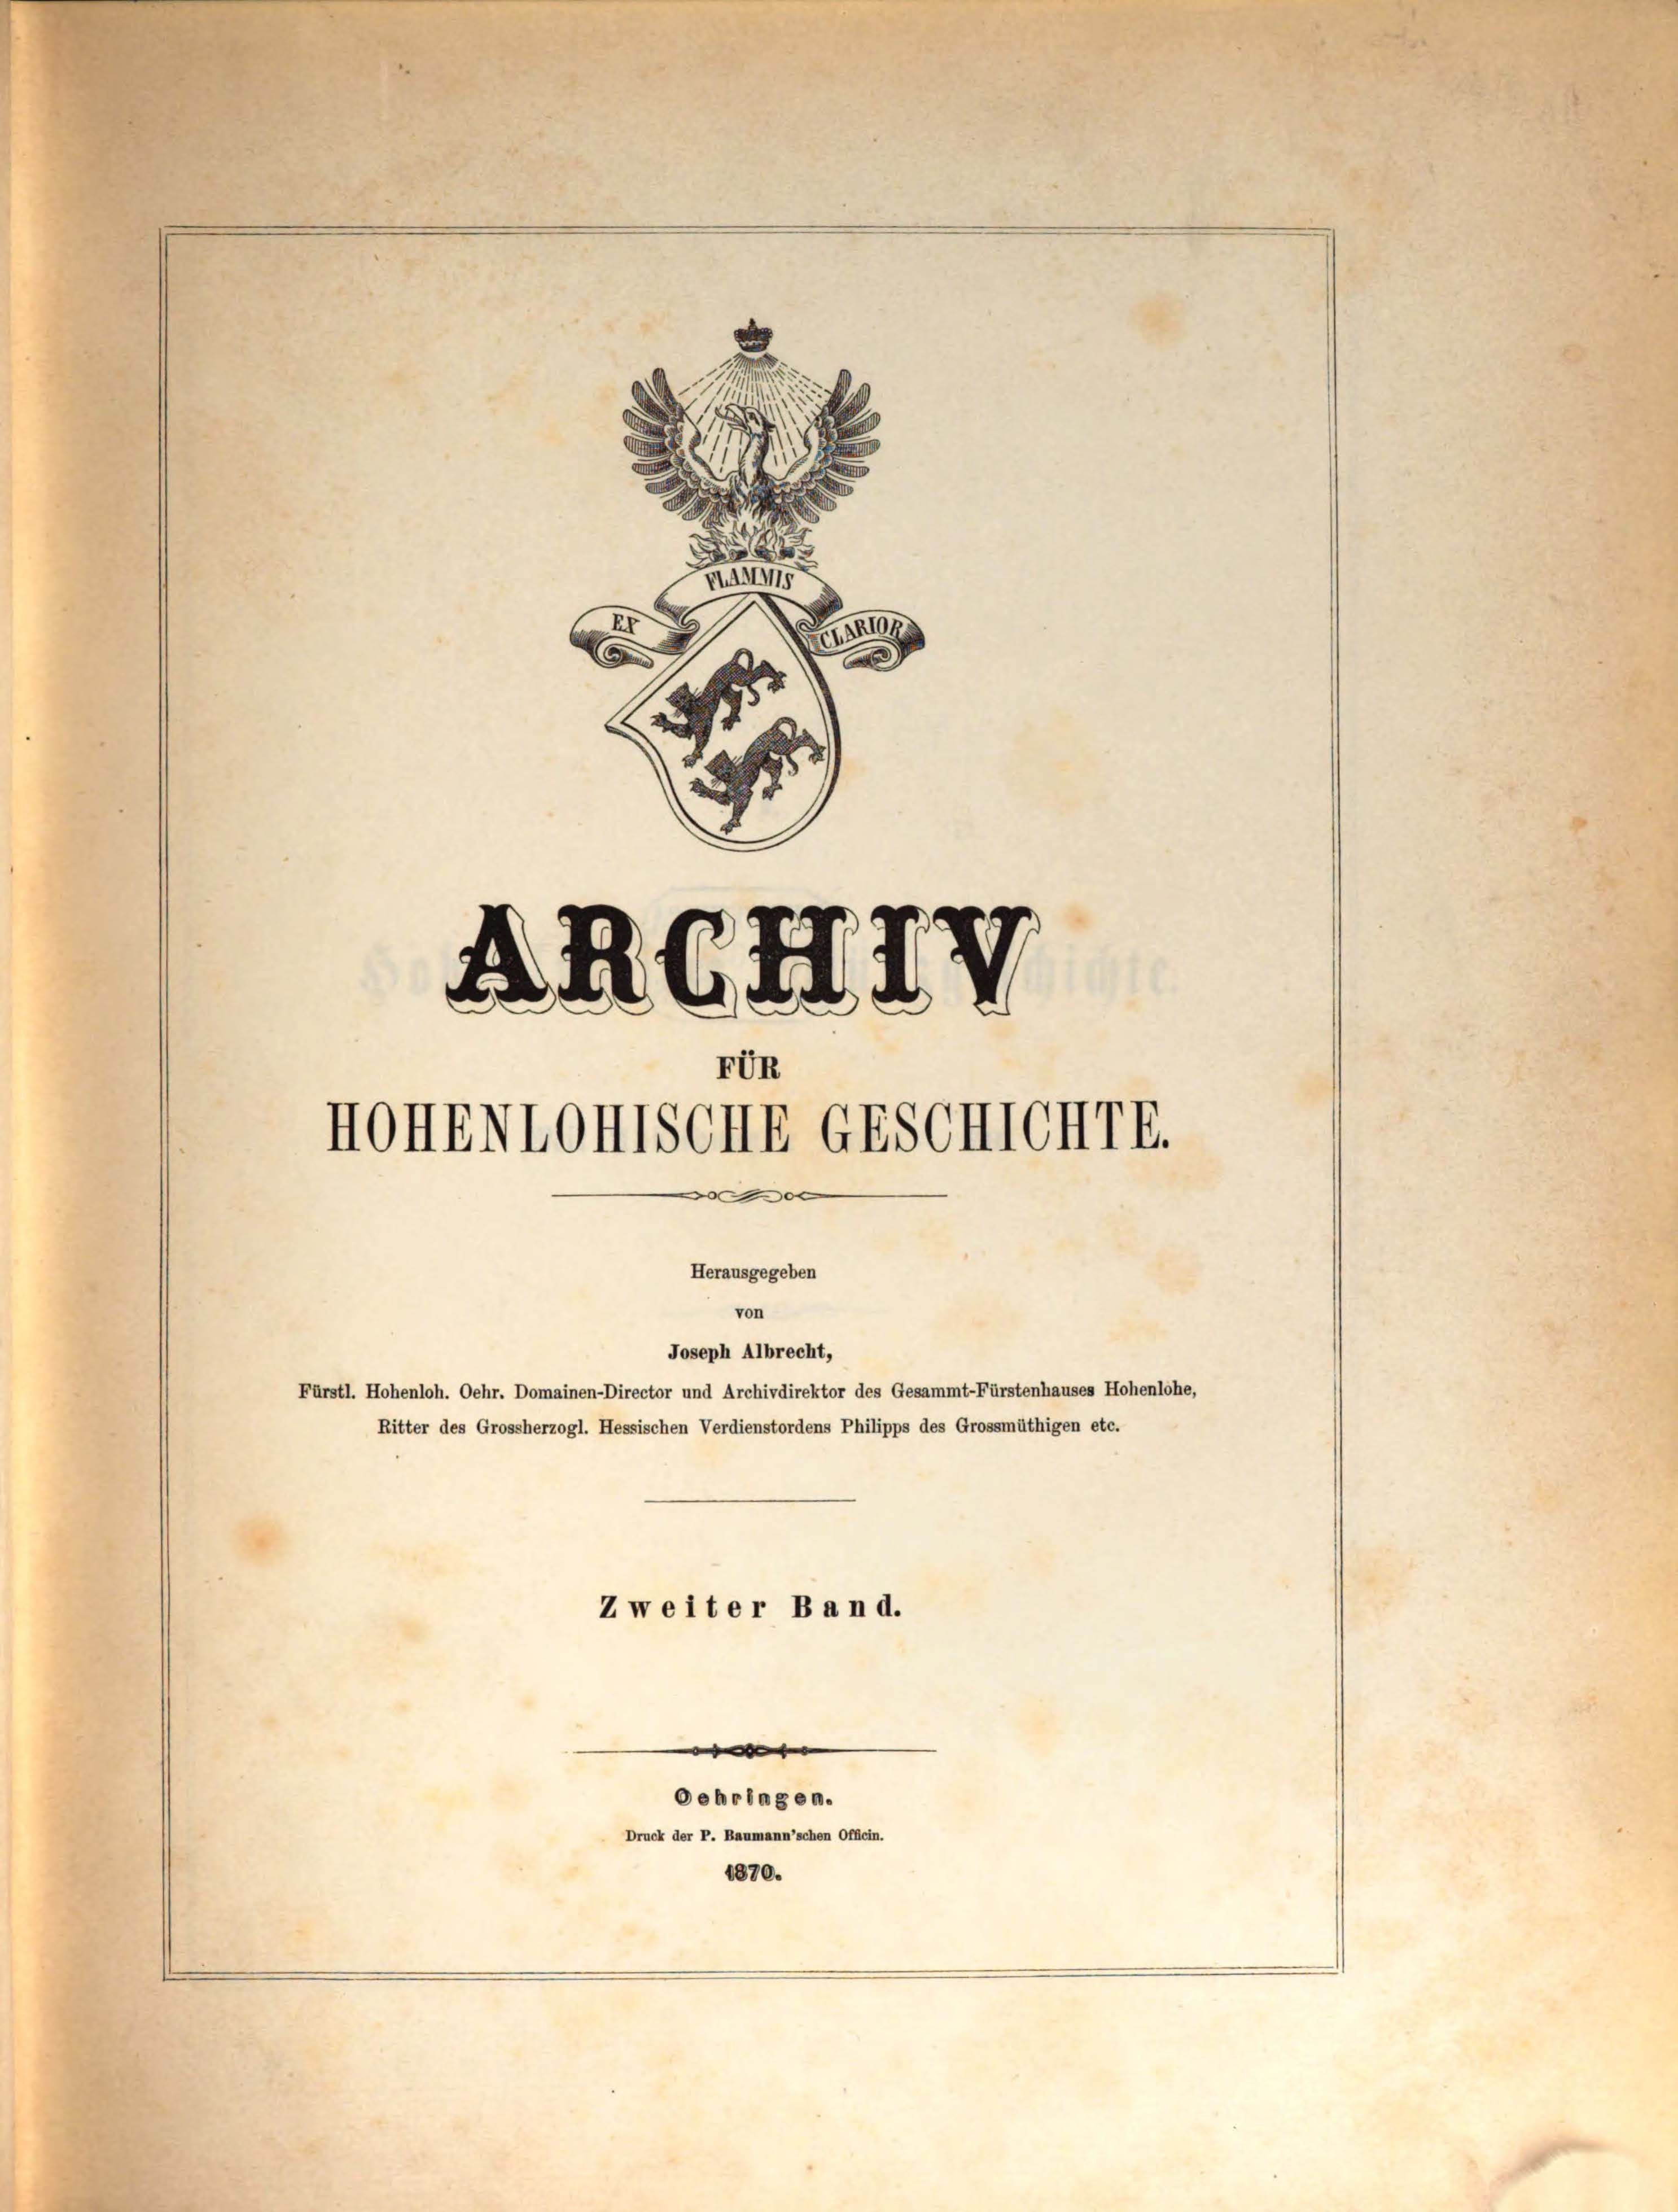                     Ansehen Bd. 2 (1870): Archiv für Hohenlohische Geschichte
                